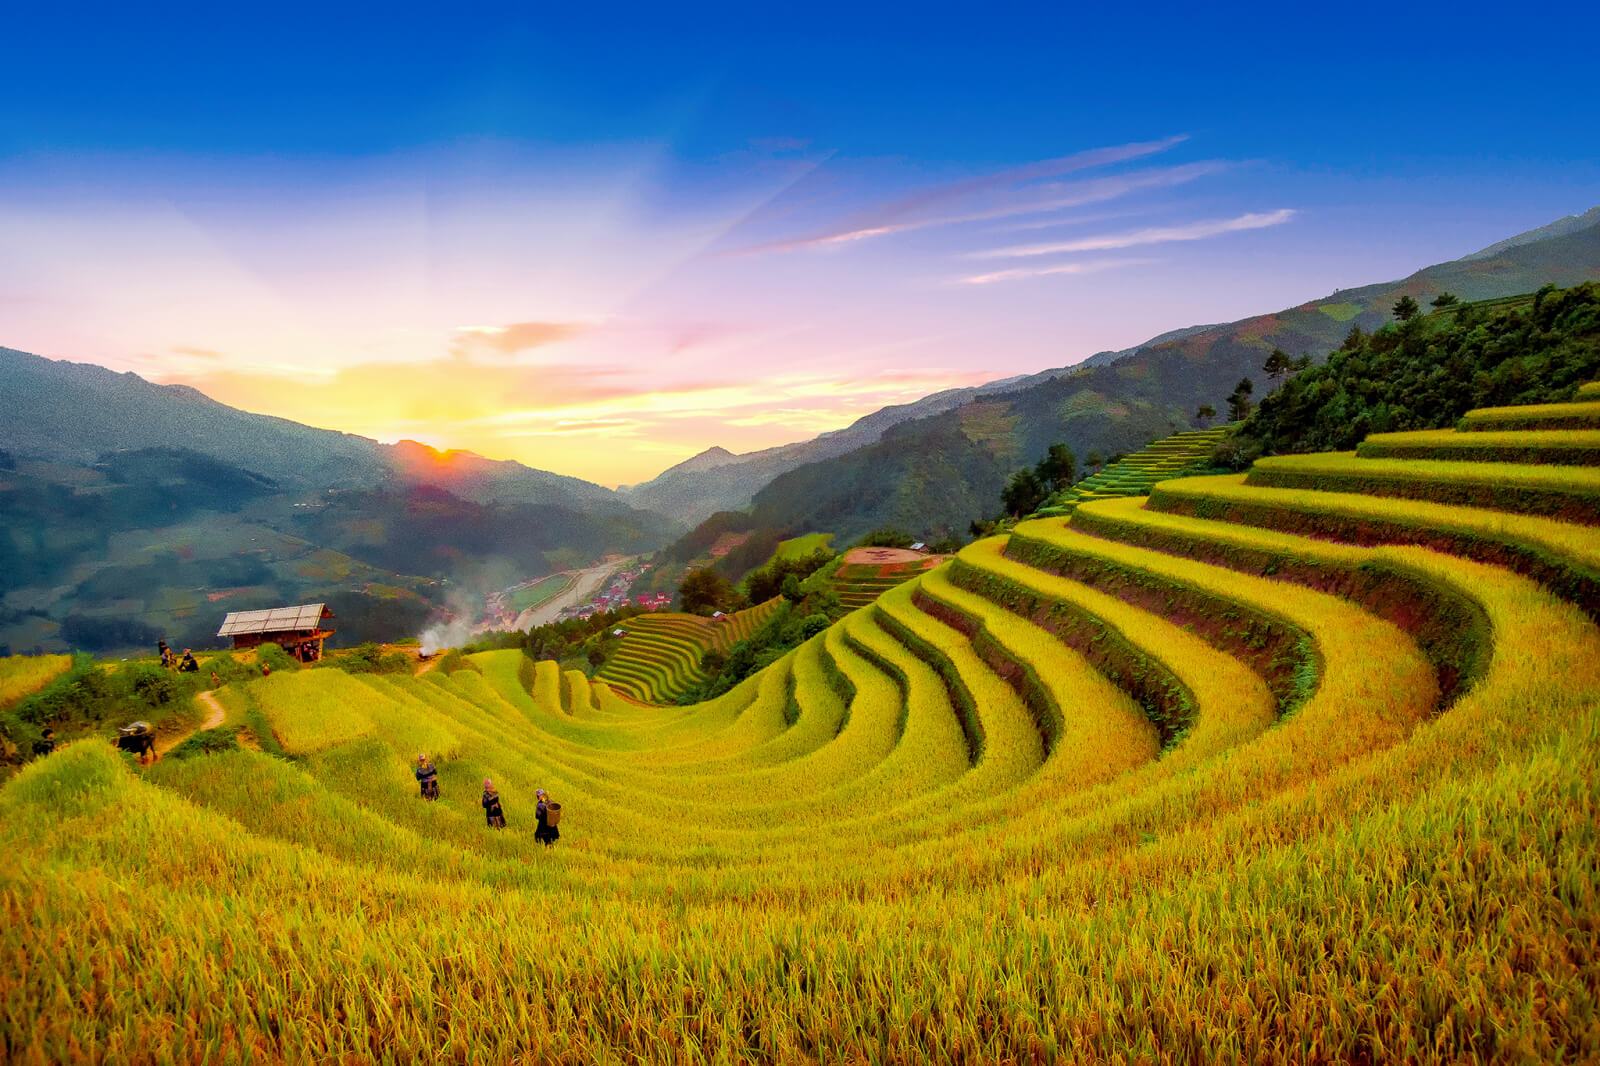 Trào lưu khoe ảnh ăn mì tại những địa điểm đẹp nhất Việt Nam - 9